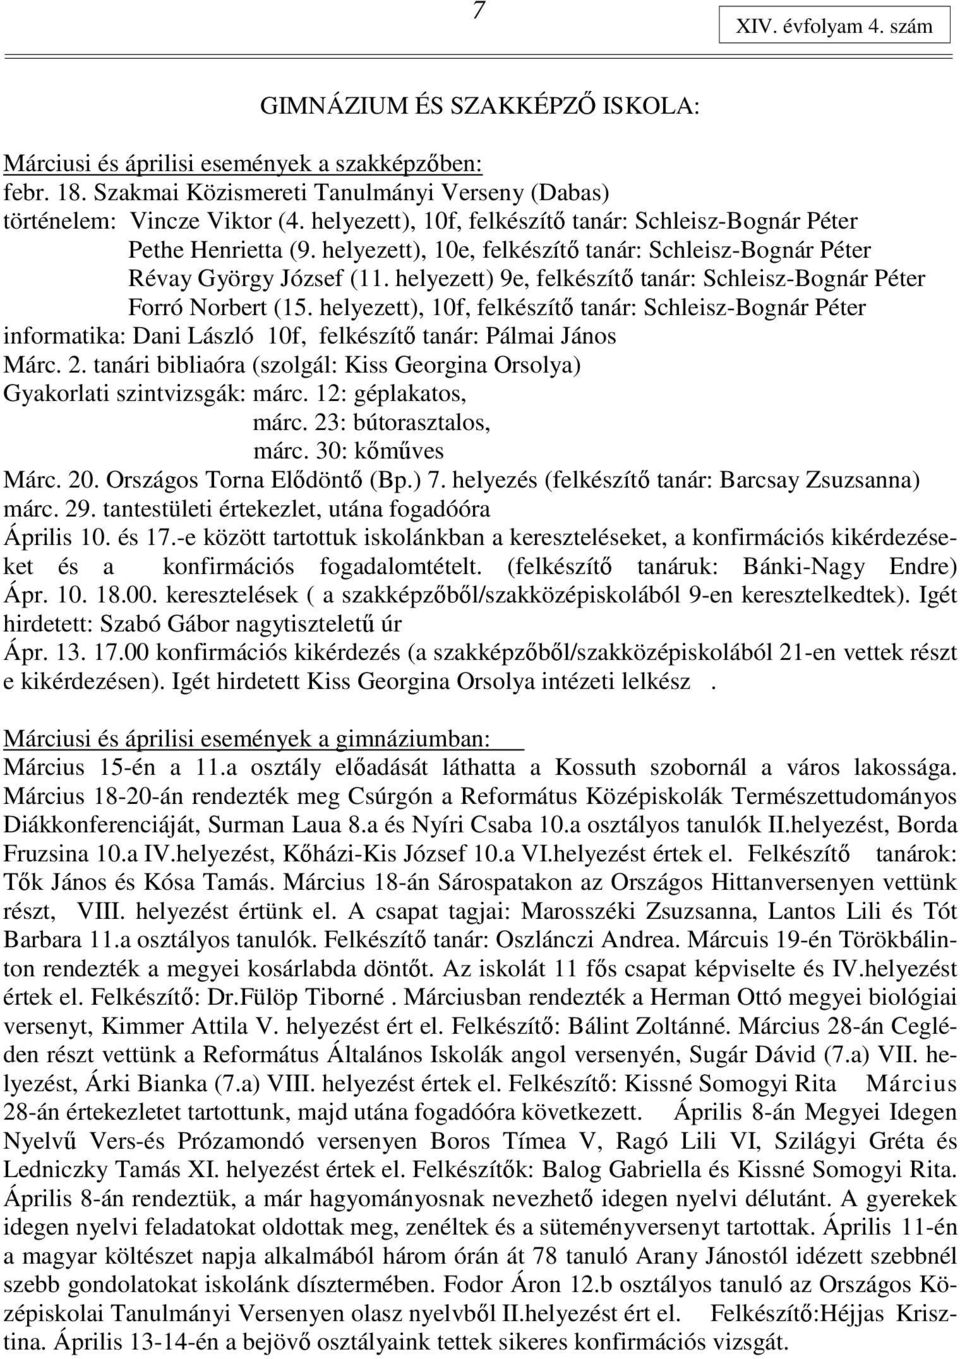 A nagykőrösi református gyülekezet húsvéti hírlevele - PDF Ingyenes letöltés